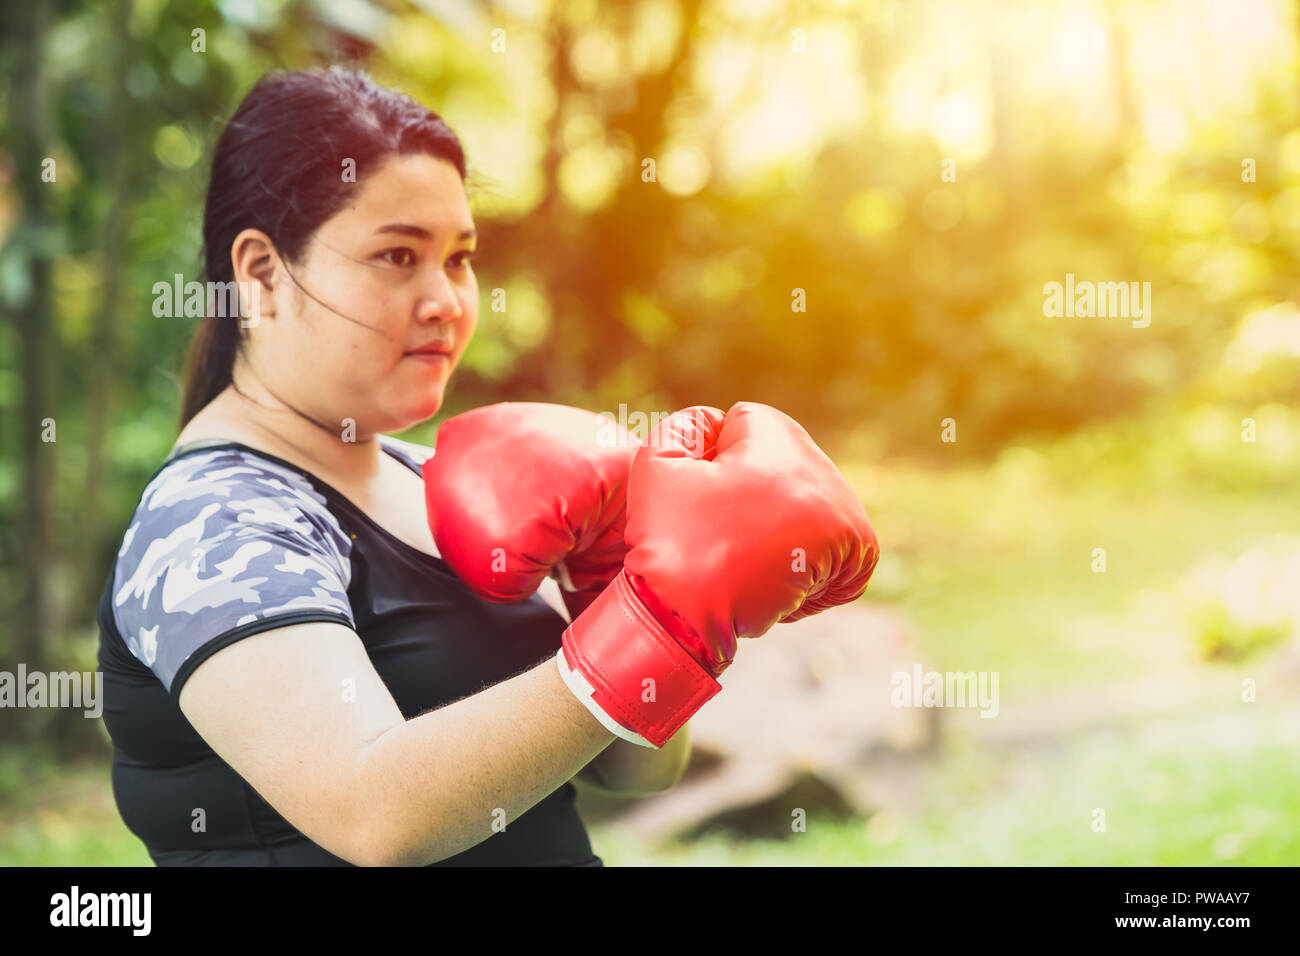 Kampf gegen Fett Konzept. Mädchen Fettsäuren Frau boxing Kämpfer mit Gewicht zu verlieren Stockfoto